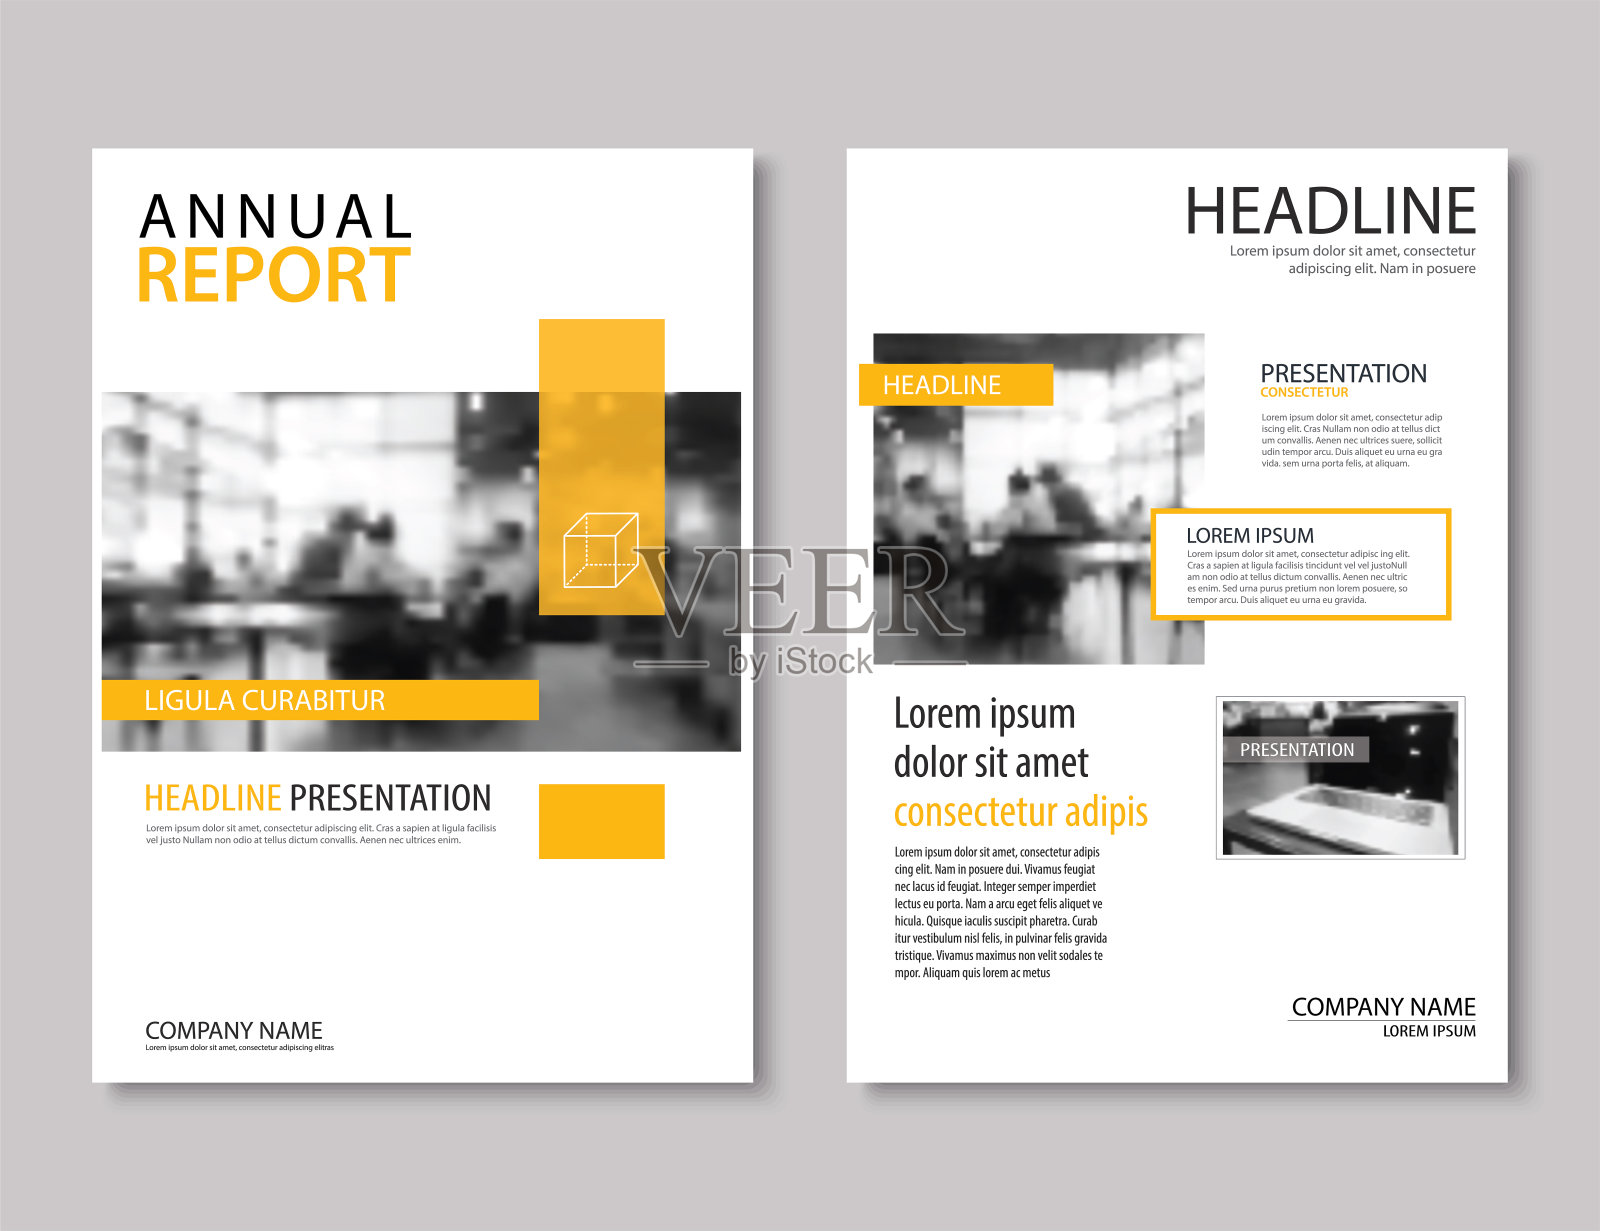 黄色年报宣传册模板A4尺寸设计。可用于单张、宣传册、版面设计、档案袋、杂志、海报、企业抽象背景展示。设计模板素材